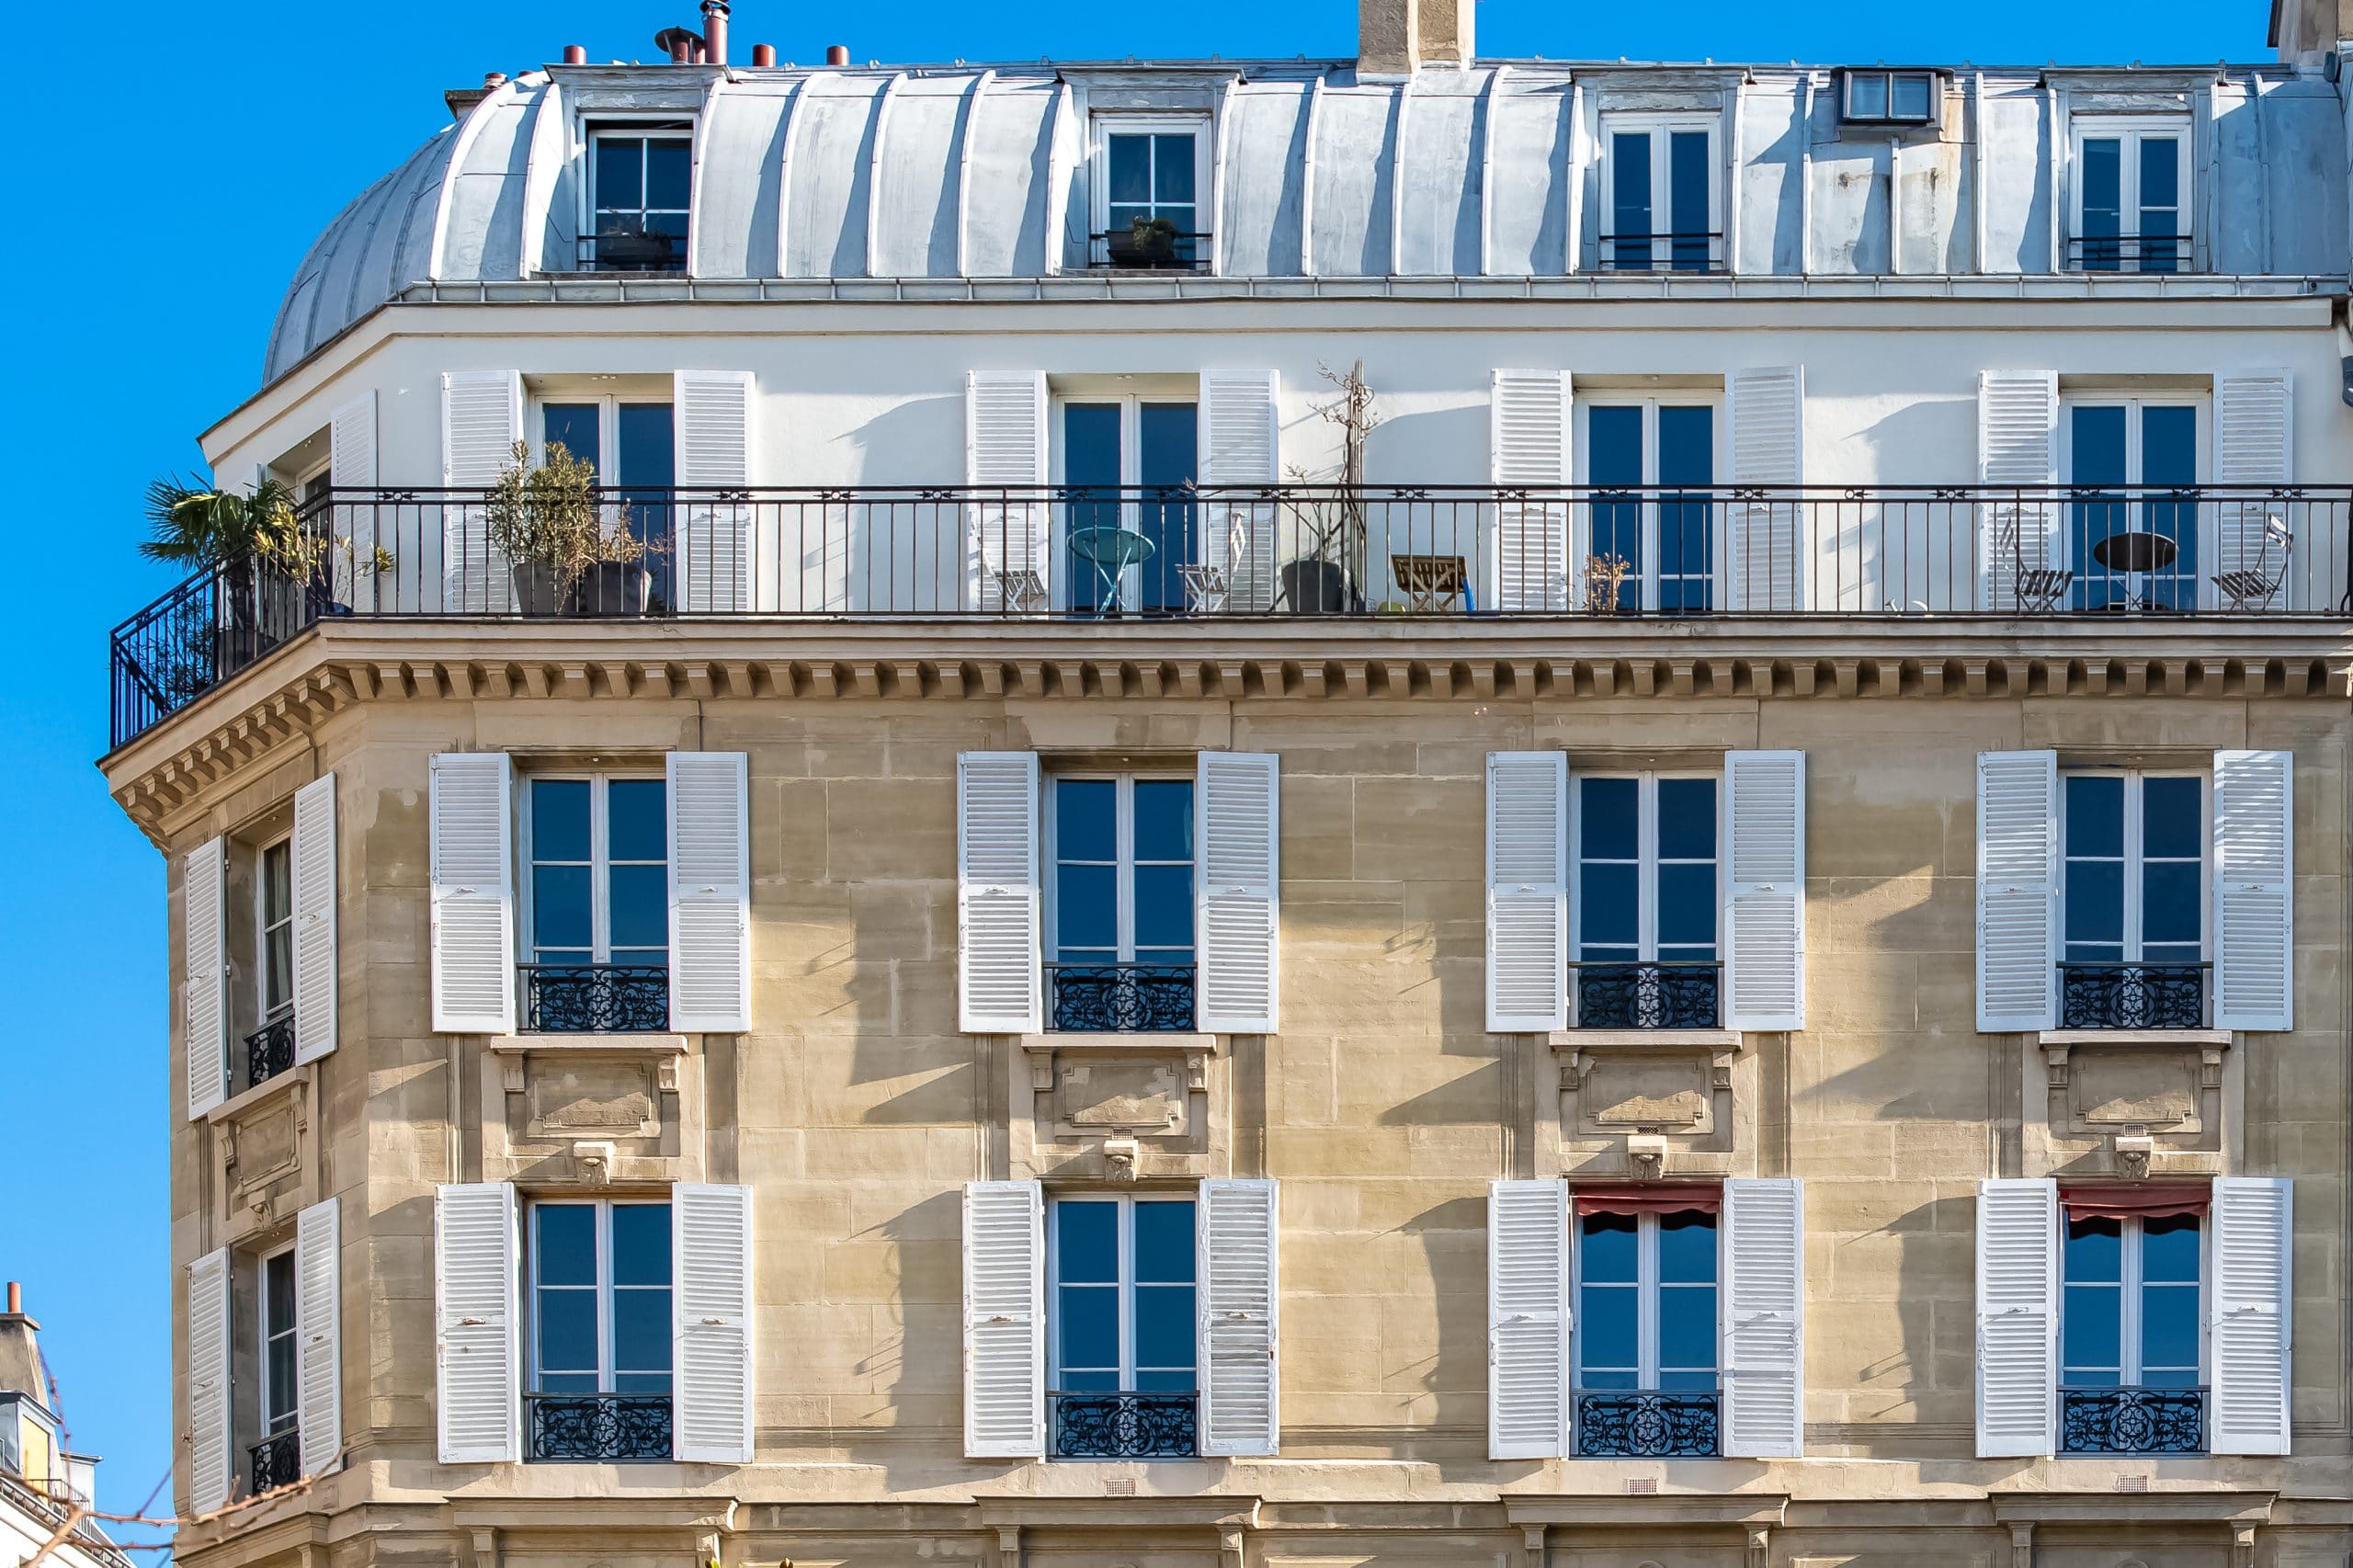 Comment trouver rapidement un appartement à Paris ? 